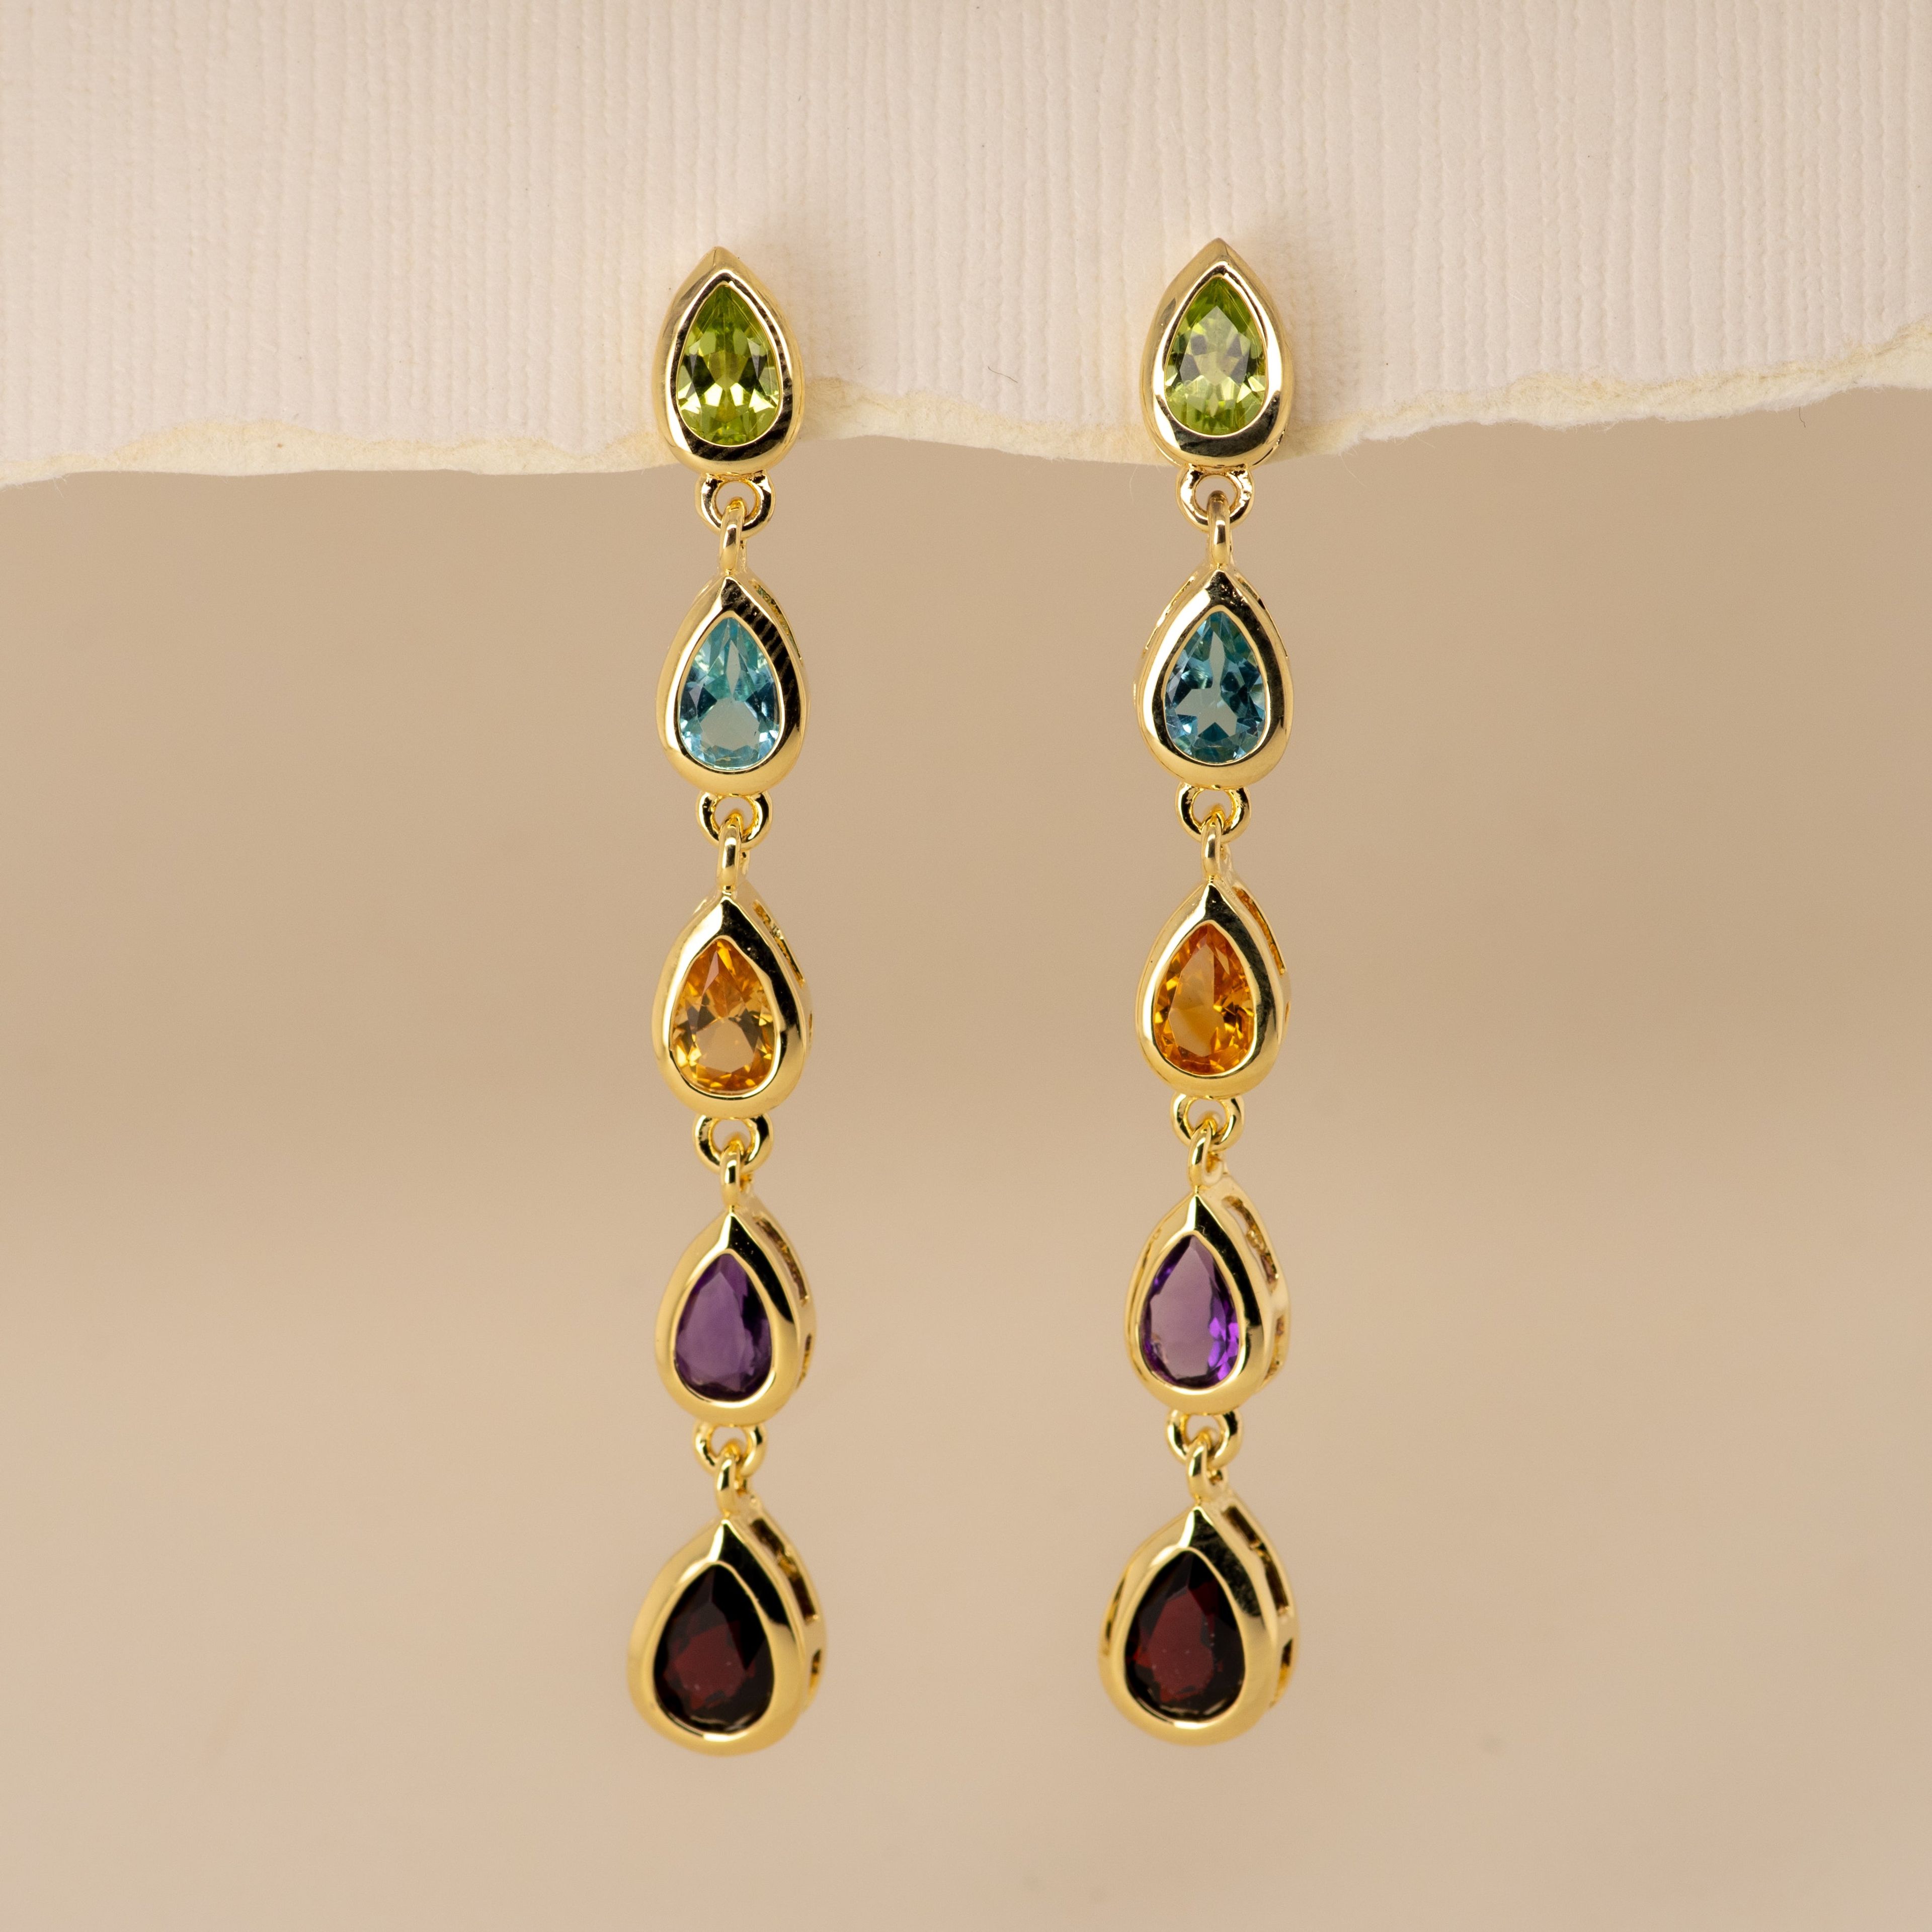 Rainbow Peridot Topaz Citrine Amethyst Garnet Earrings in Sterling Silver